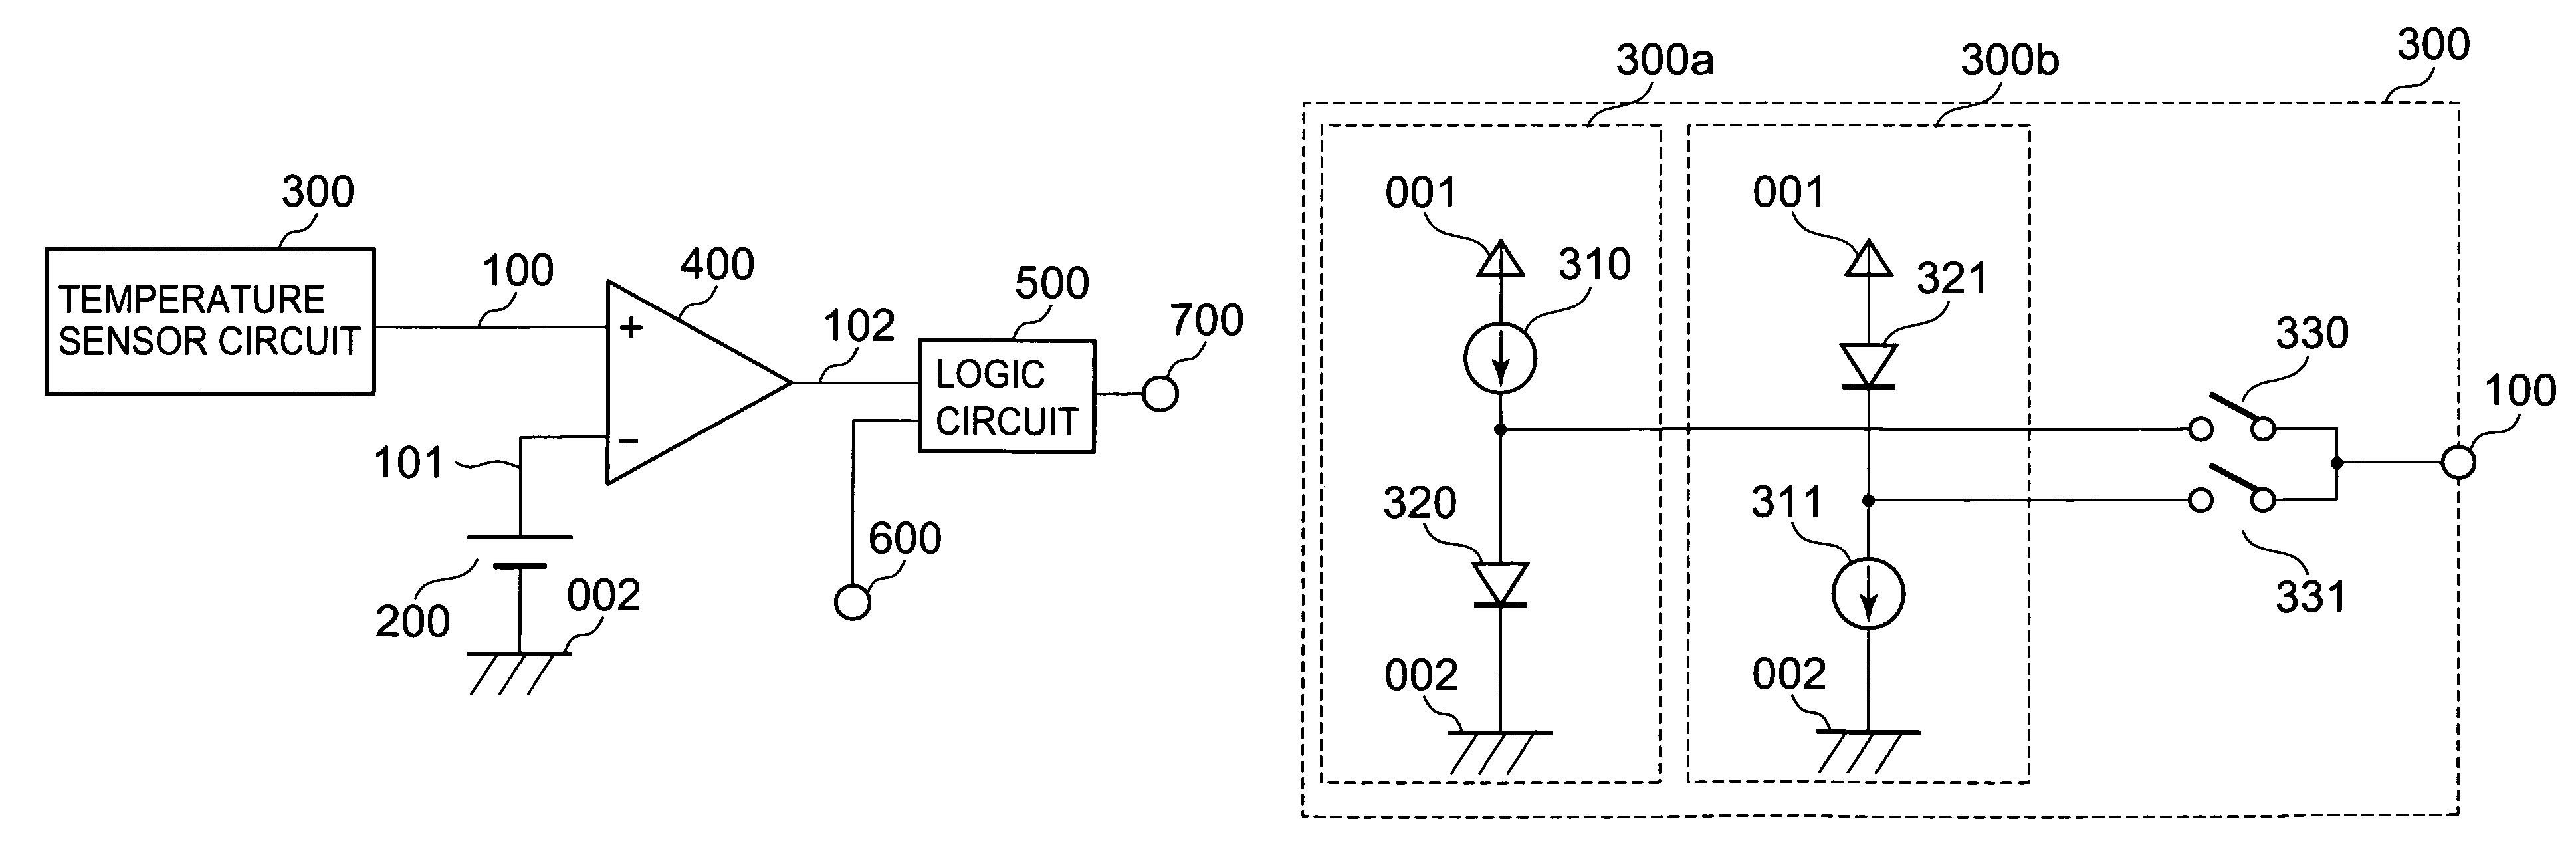 Temperature detection circuit